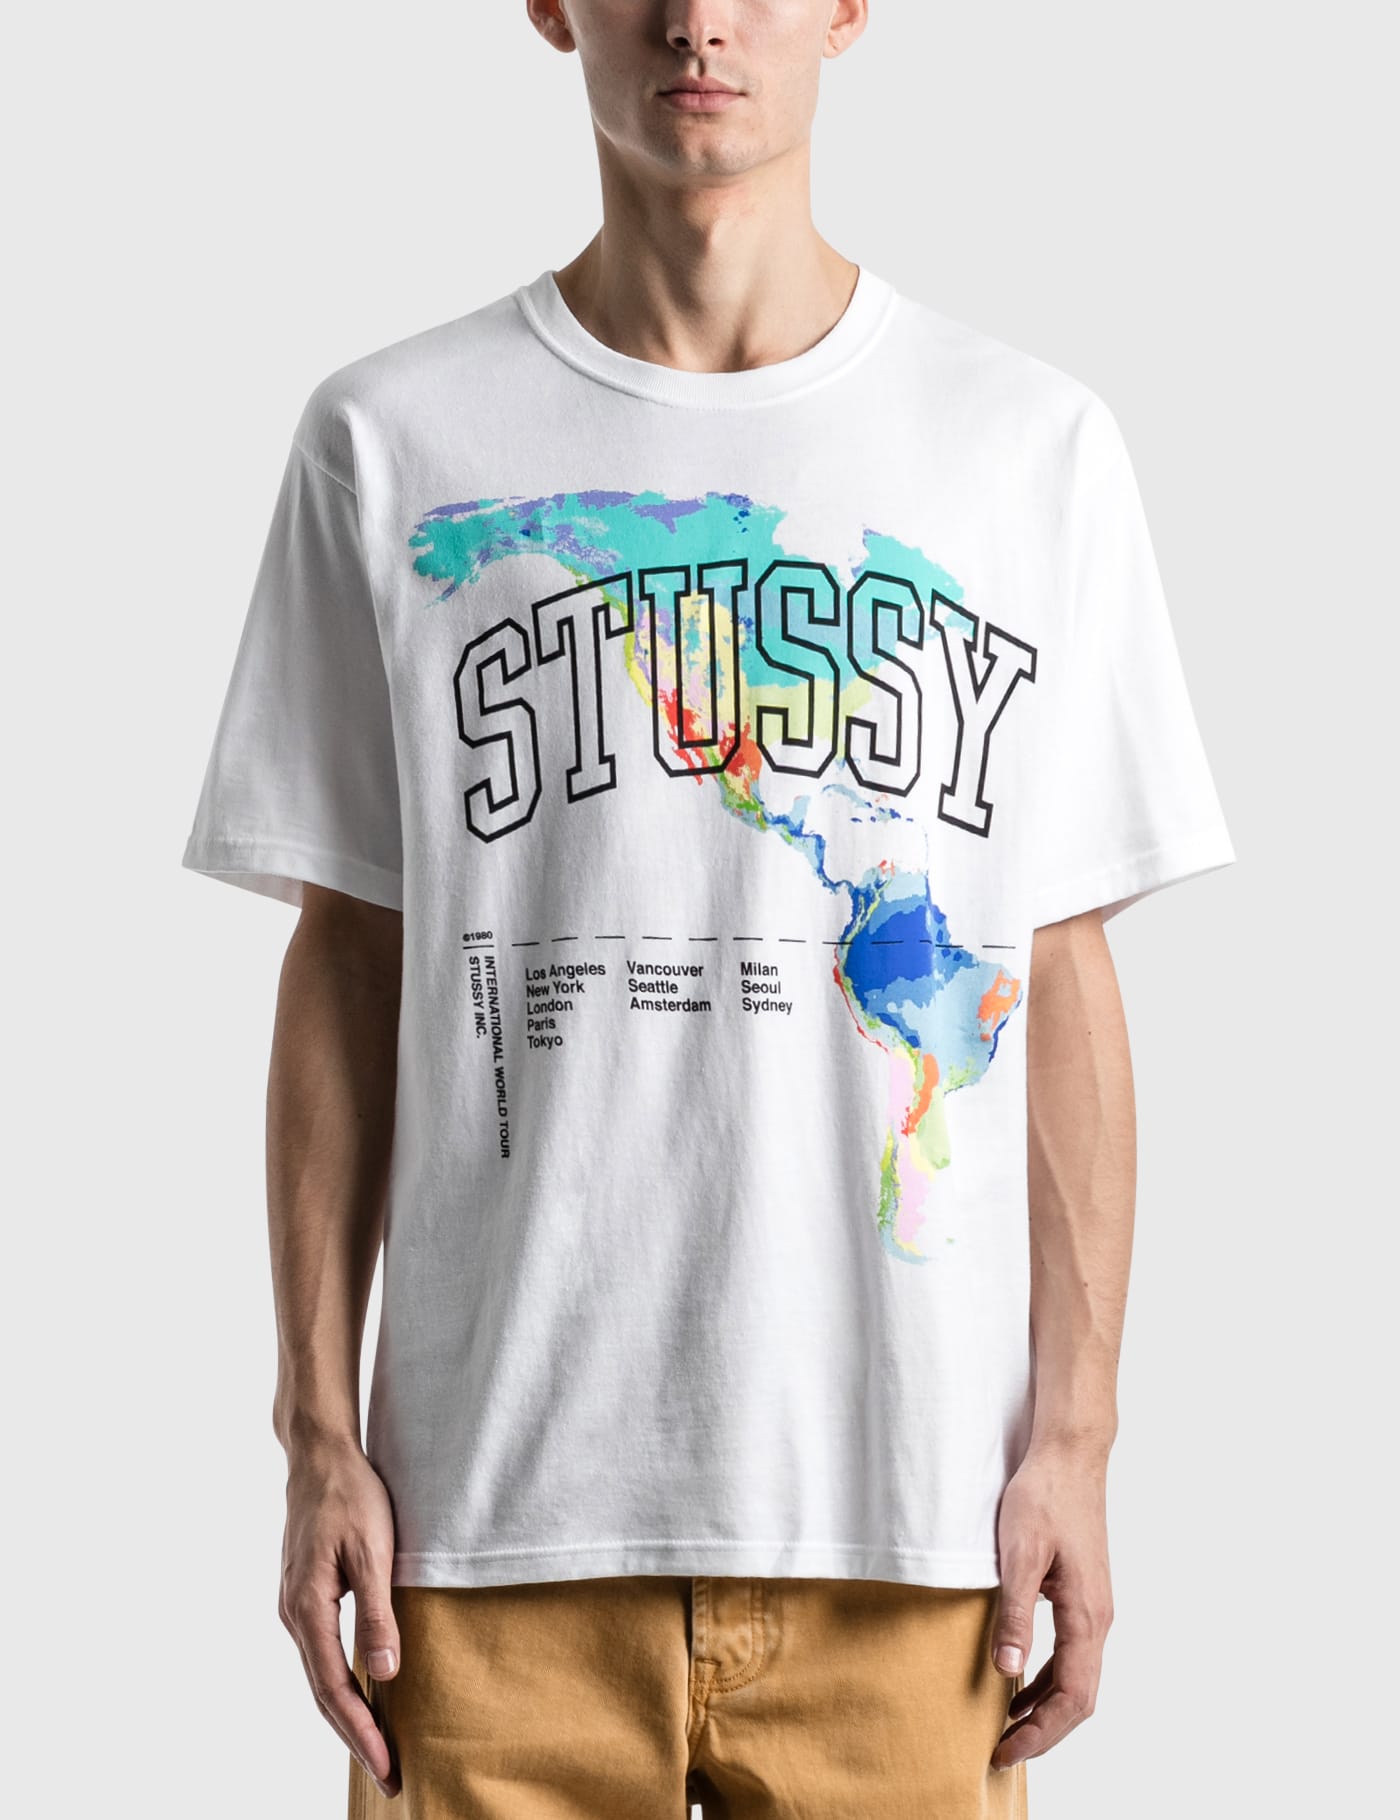 stussy t shirt india